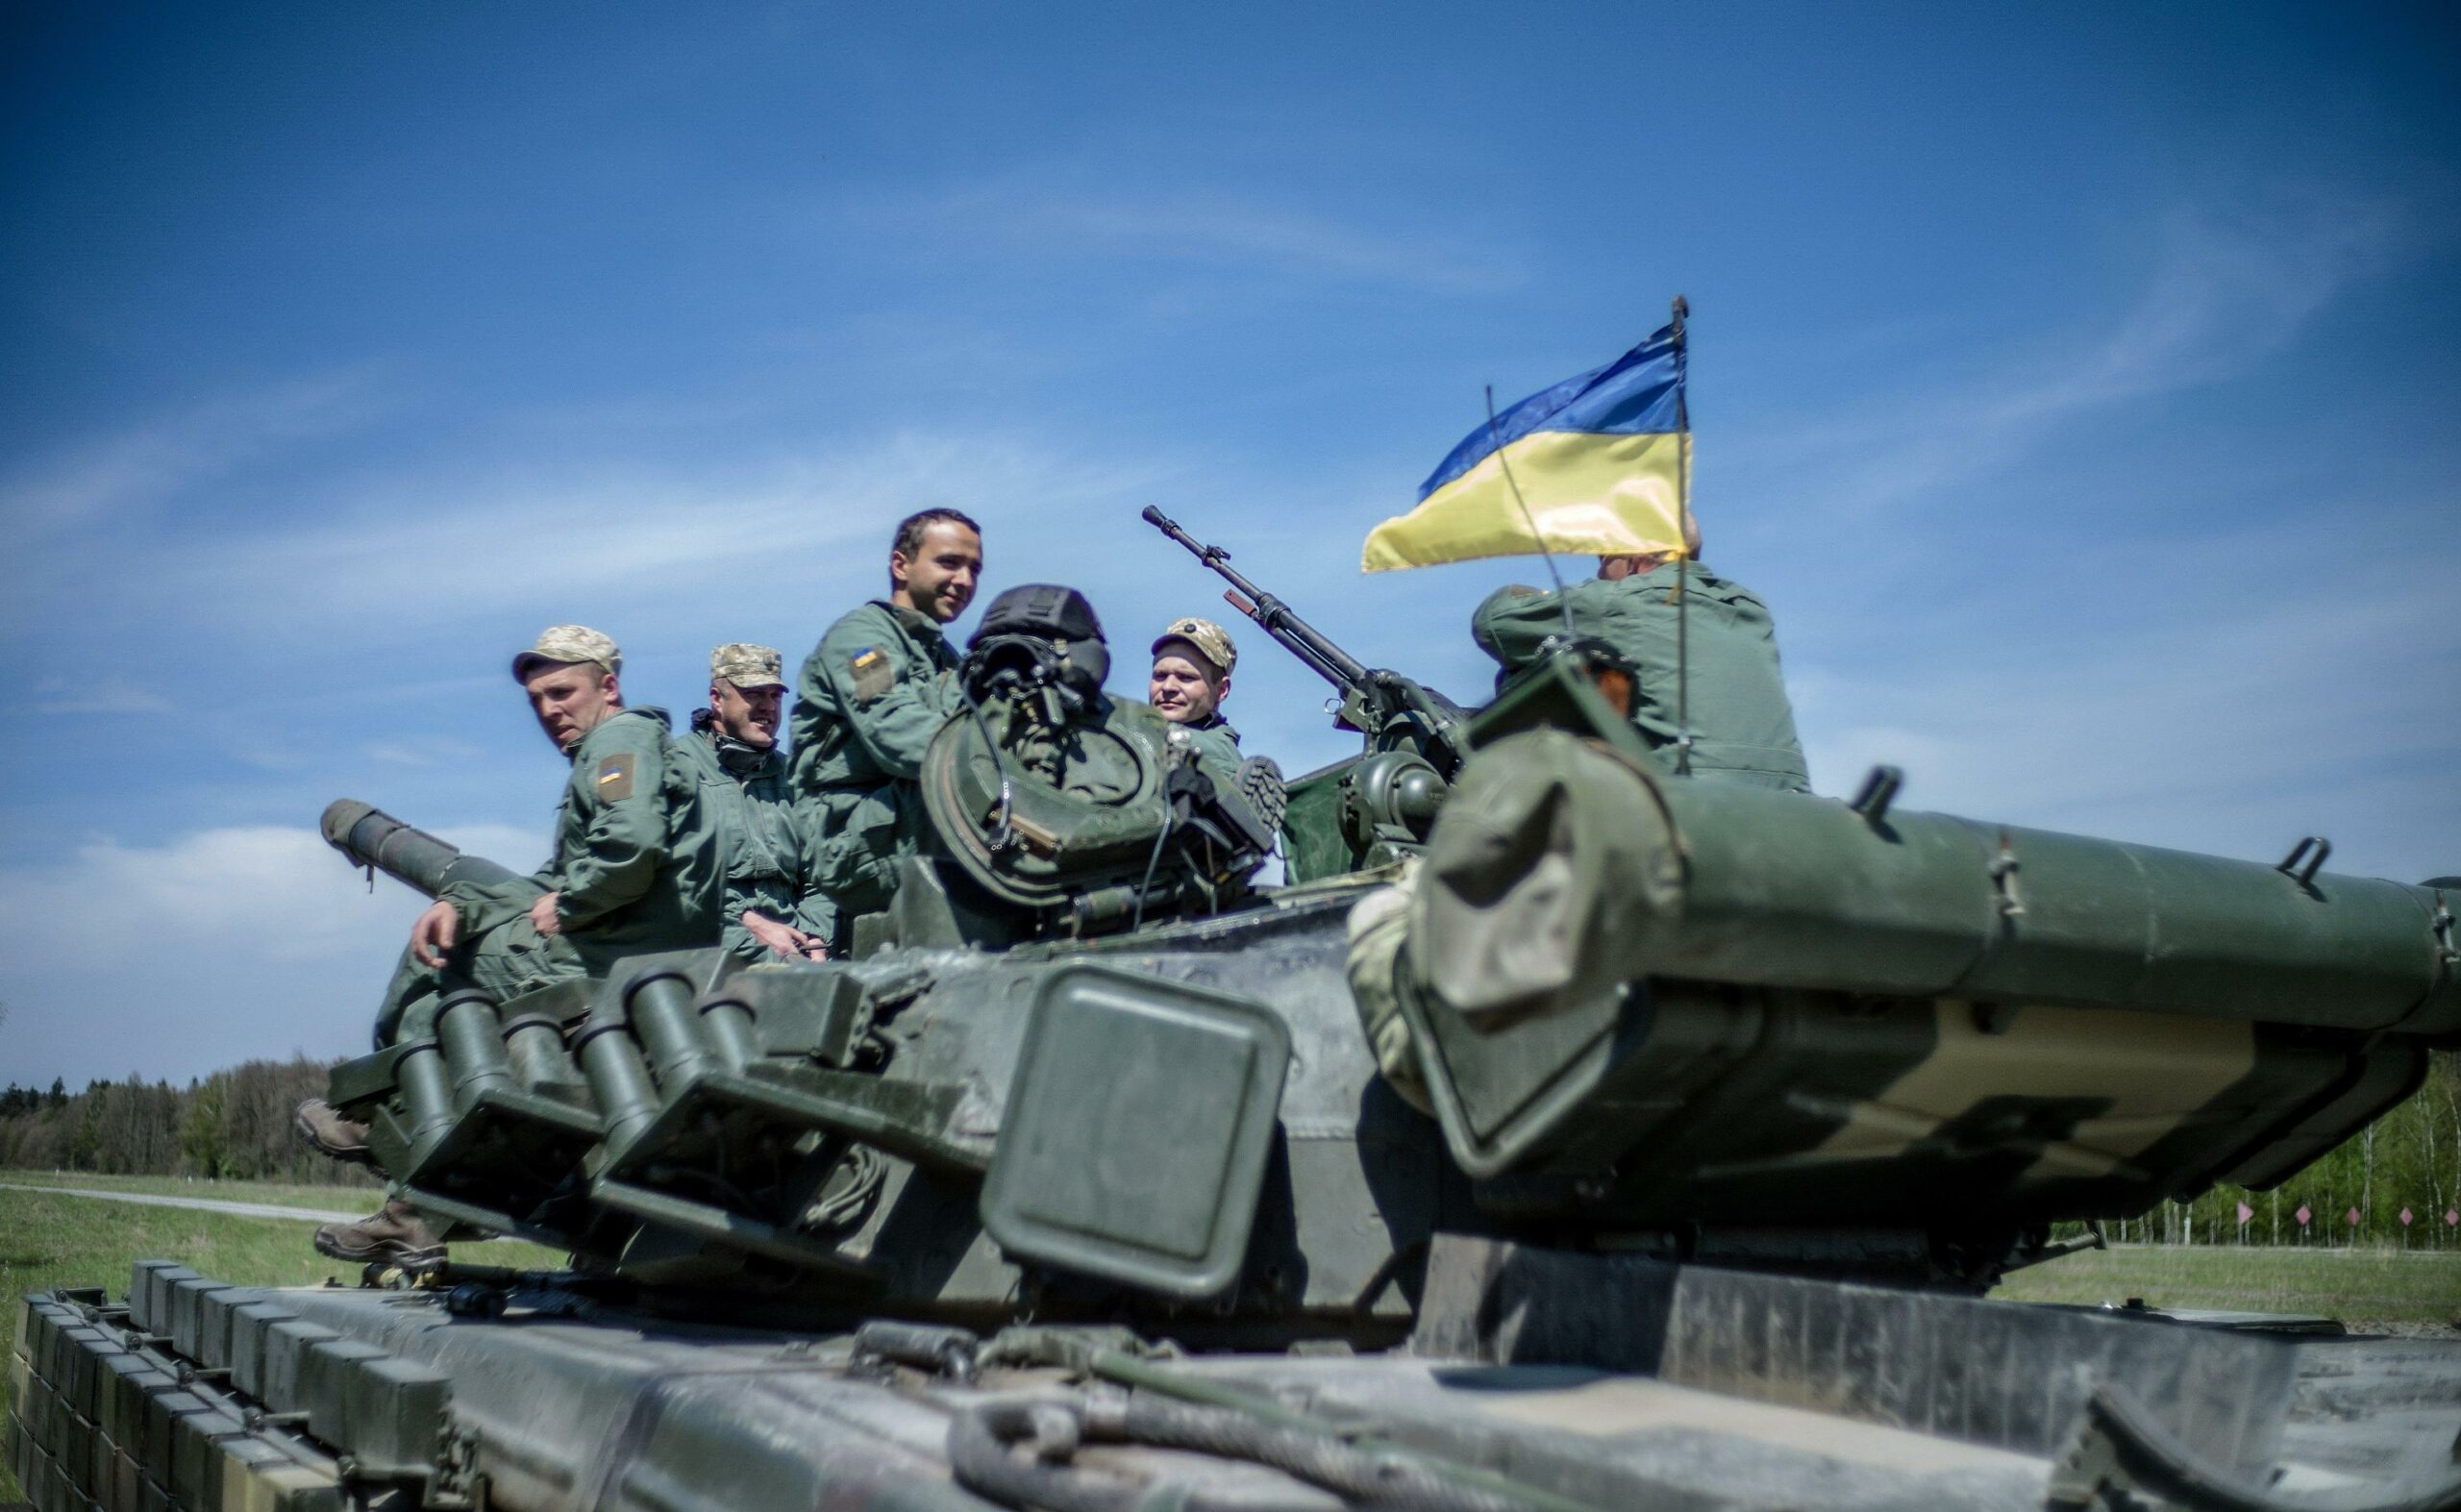 artiglieri,-carristi-e-piloti:-cosi-l'occidente-addestra-l'ucraina